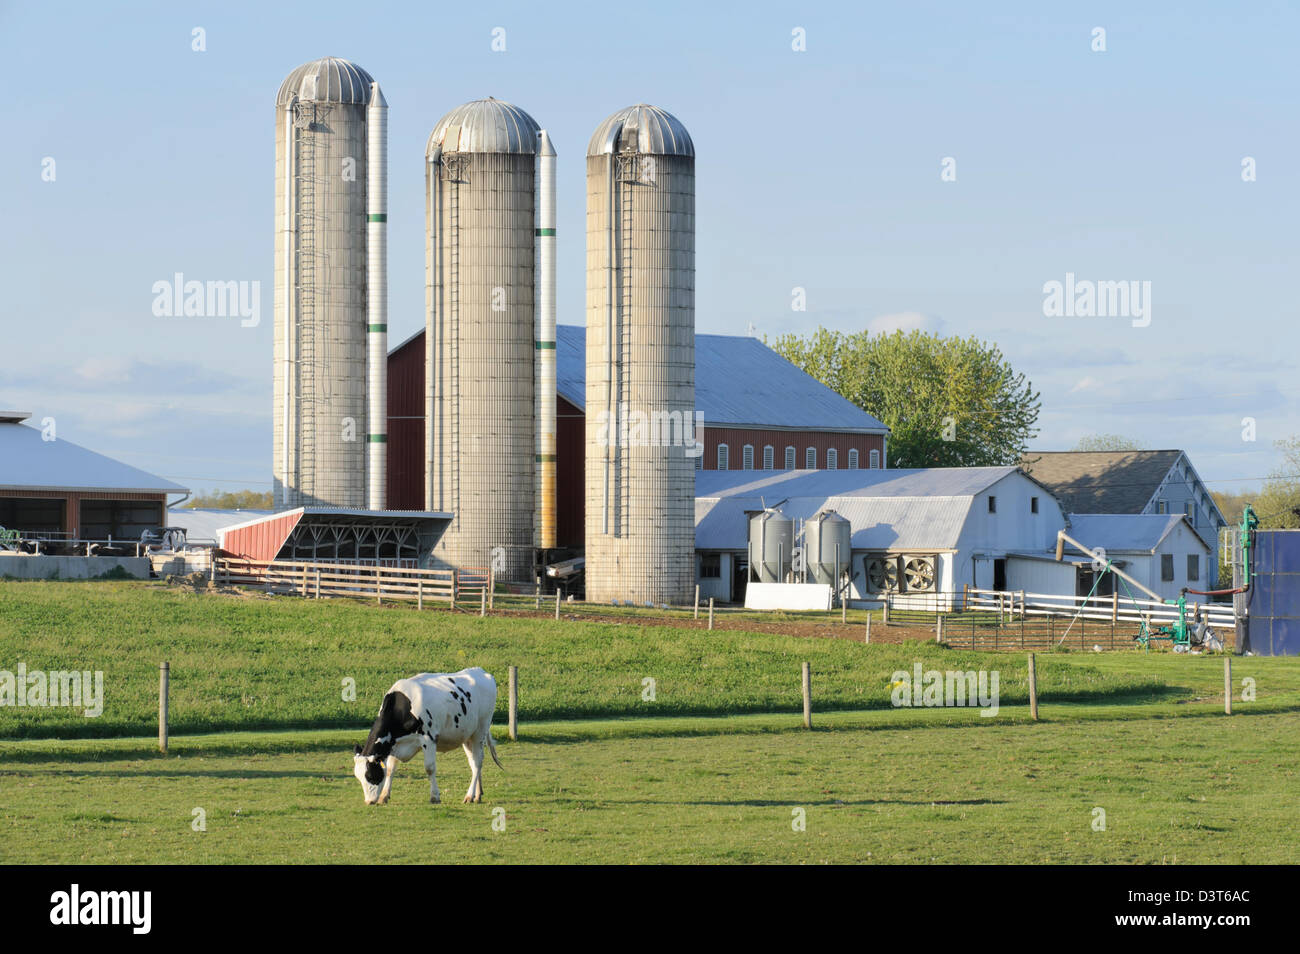 Dairy Farm con bovini di razza Holstein in pascolo e tre silos in luce della sera, Pennsylvania paesaggio di campagna, PA, Stati Uniti d'America. Foto Stock